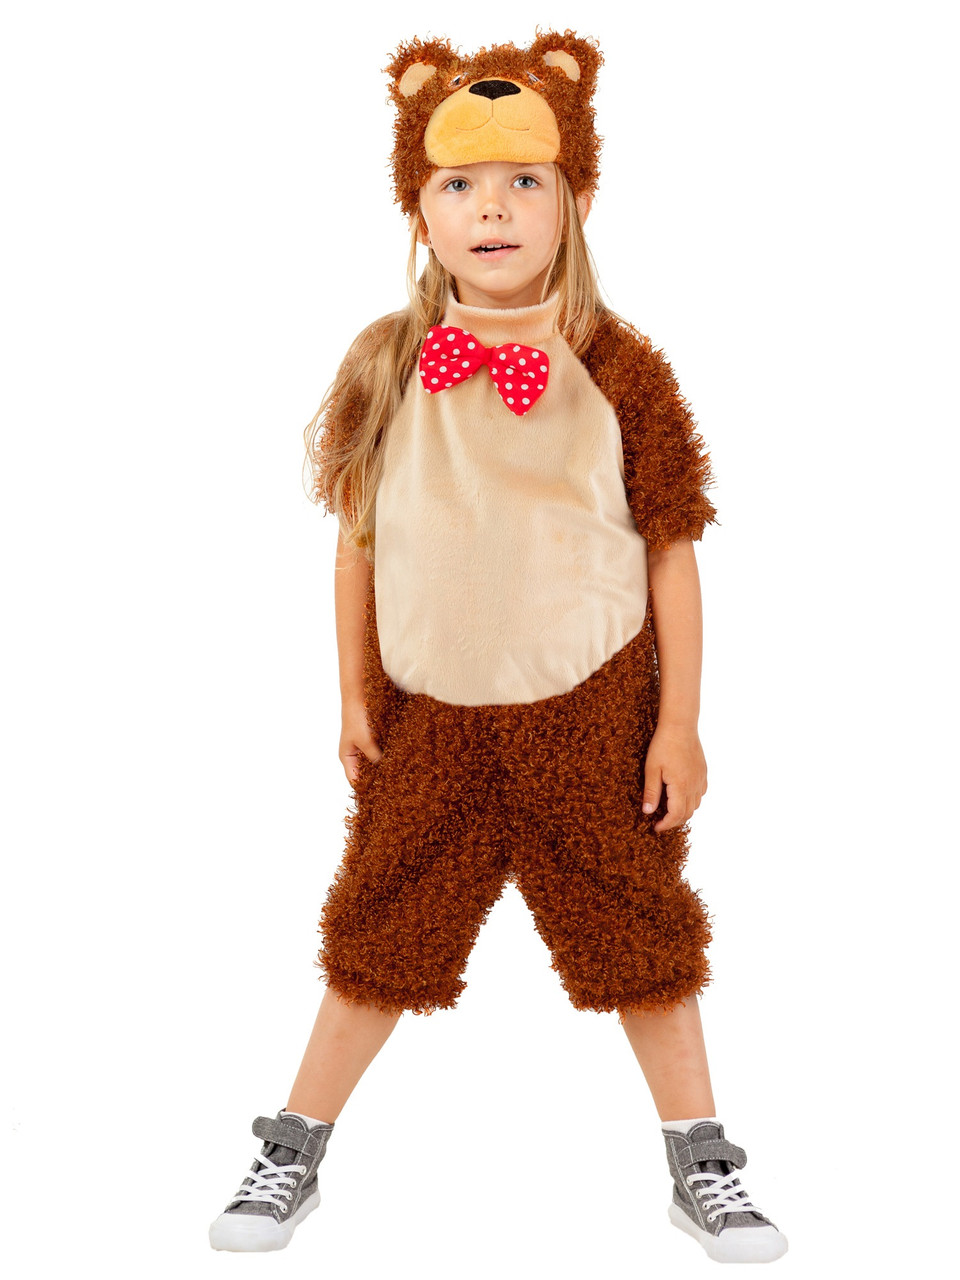 Детский карнавальный костюм Пушистый медведь Пуговка 911 к-17